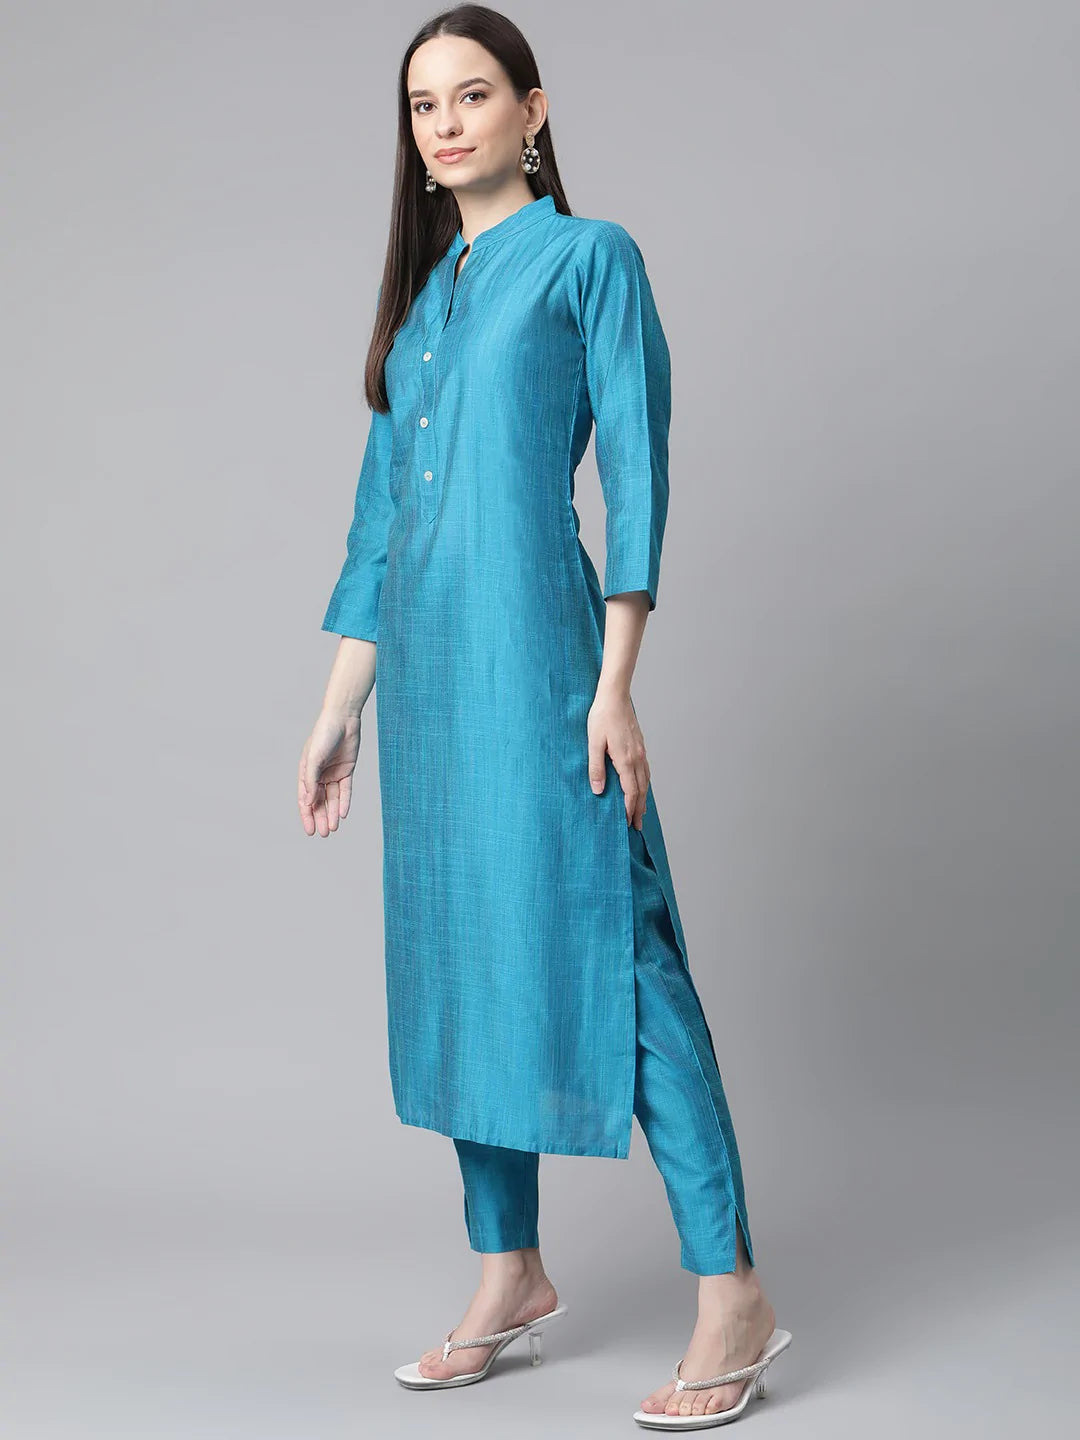 Jompers Women Blue & Green Self-Striped Kurta with Trousers & Printed Art Silk Dupatta ( JOKS D8NB 1310 Blue )